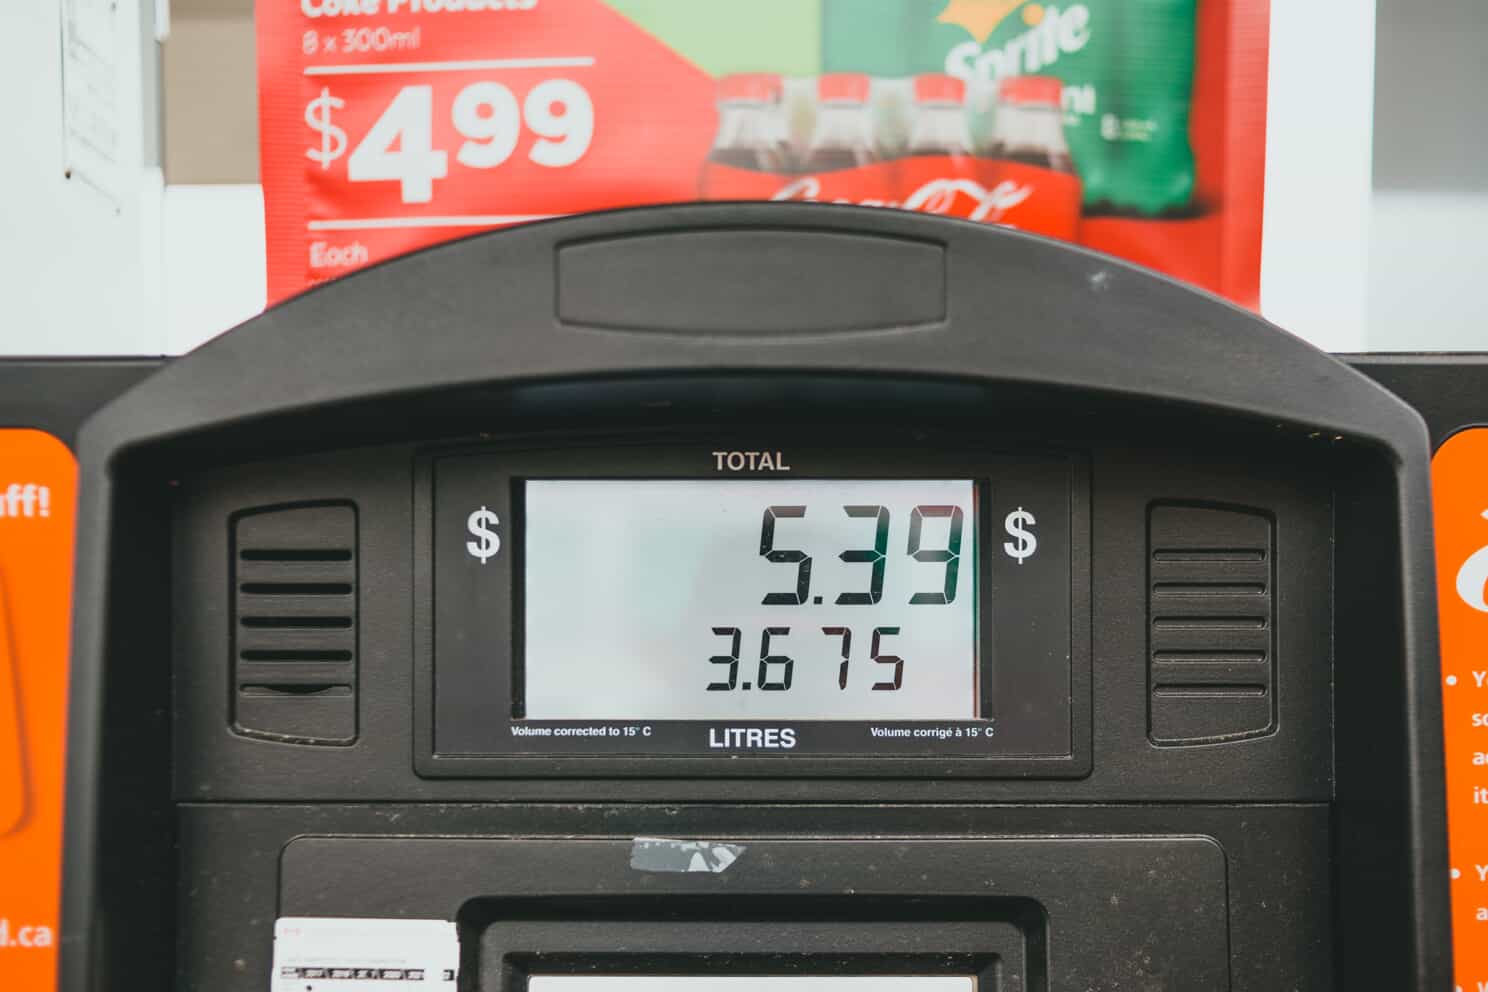  display screen of a gasoline pump